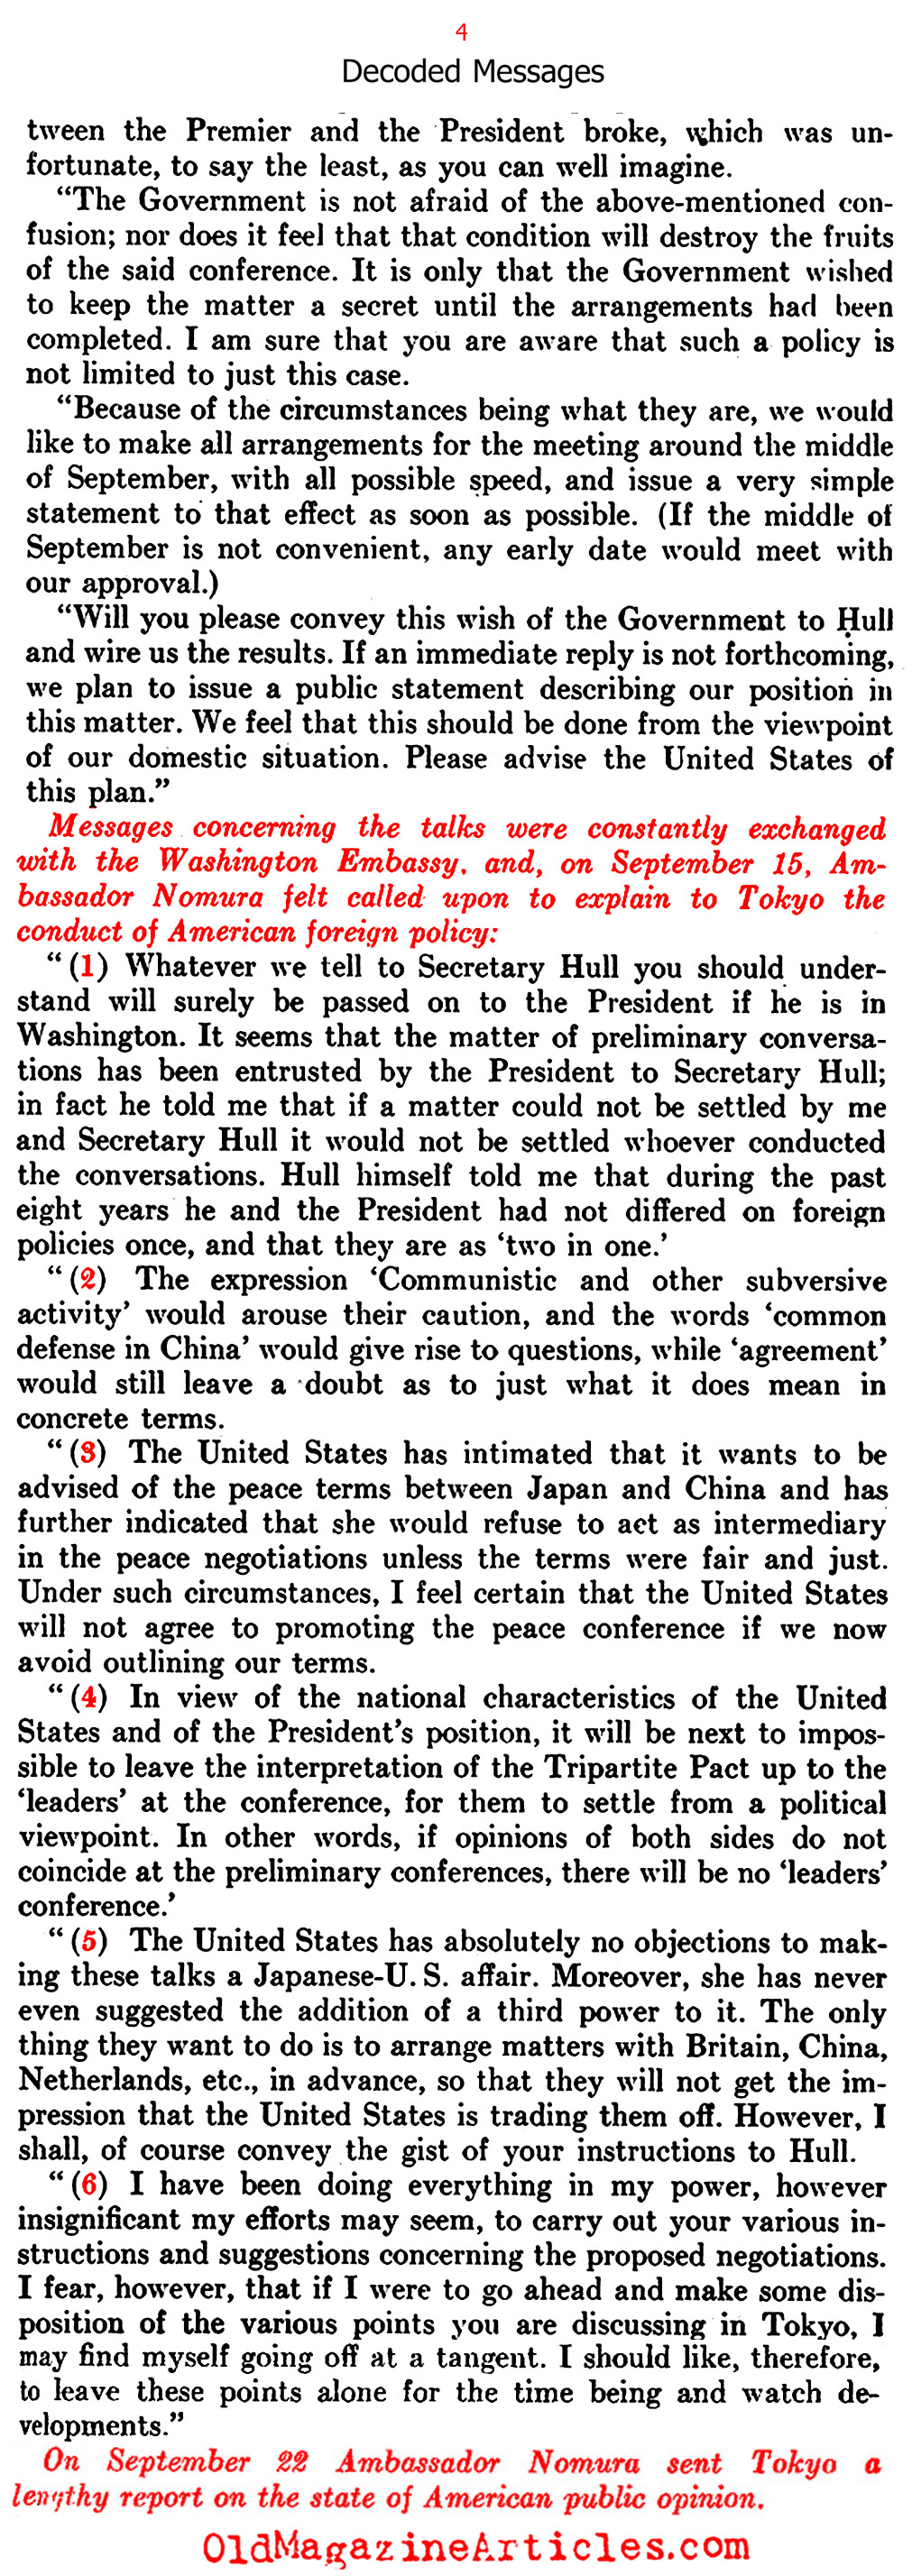 The Un-Secret Secrets (United States News, 1945)